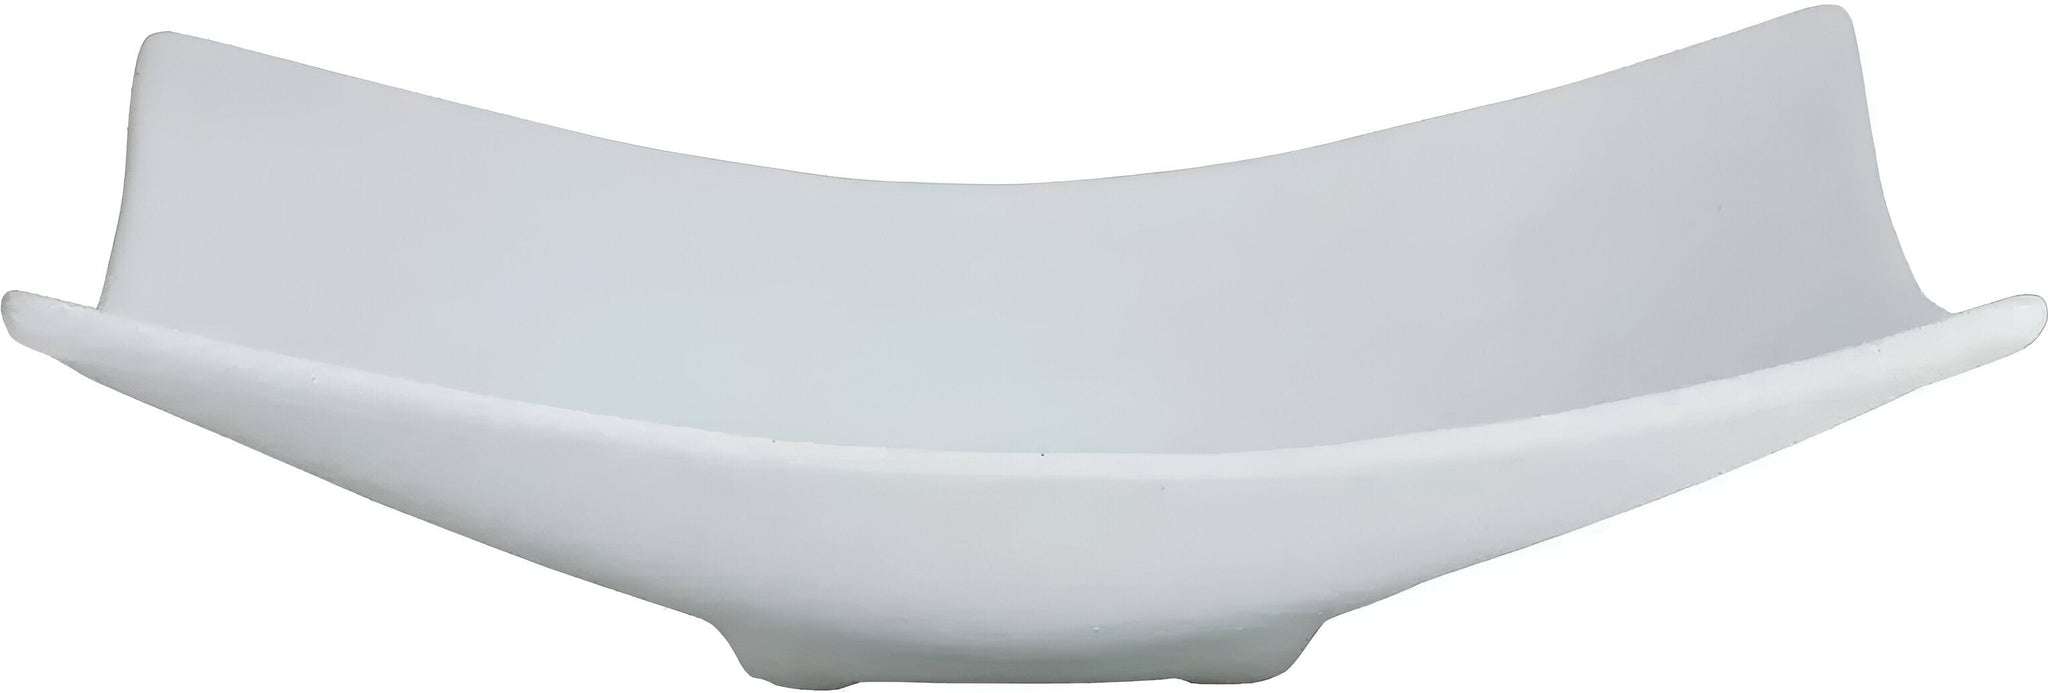 Bugambilia - Classic 118.4 Oz XX-Large Rectangular White Fruit Bowl With Elegantly Textured - FU008WW